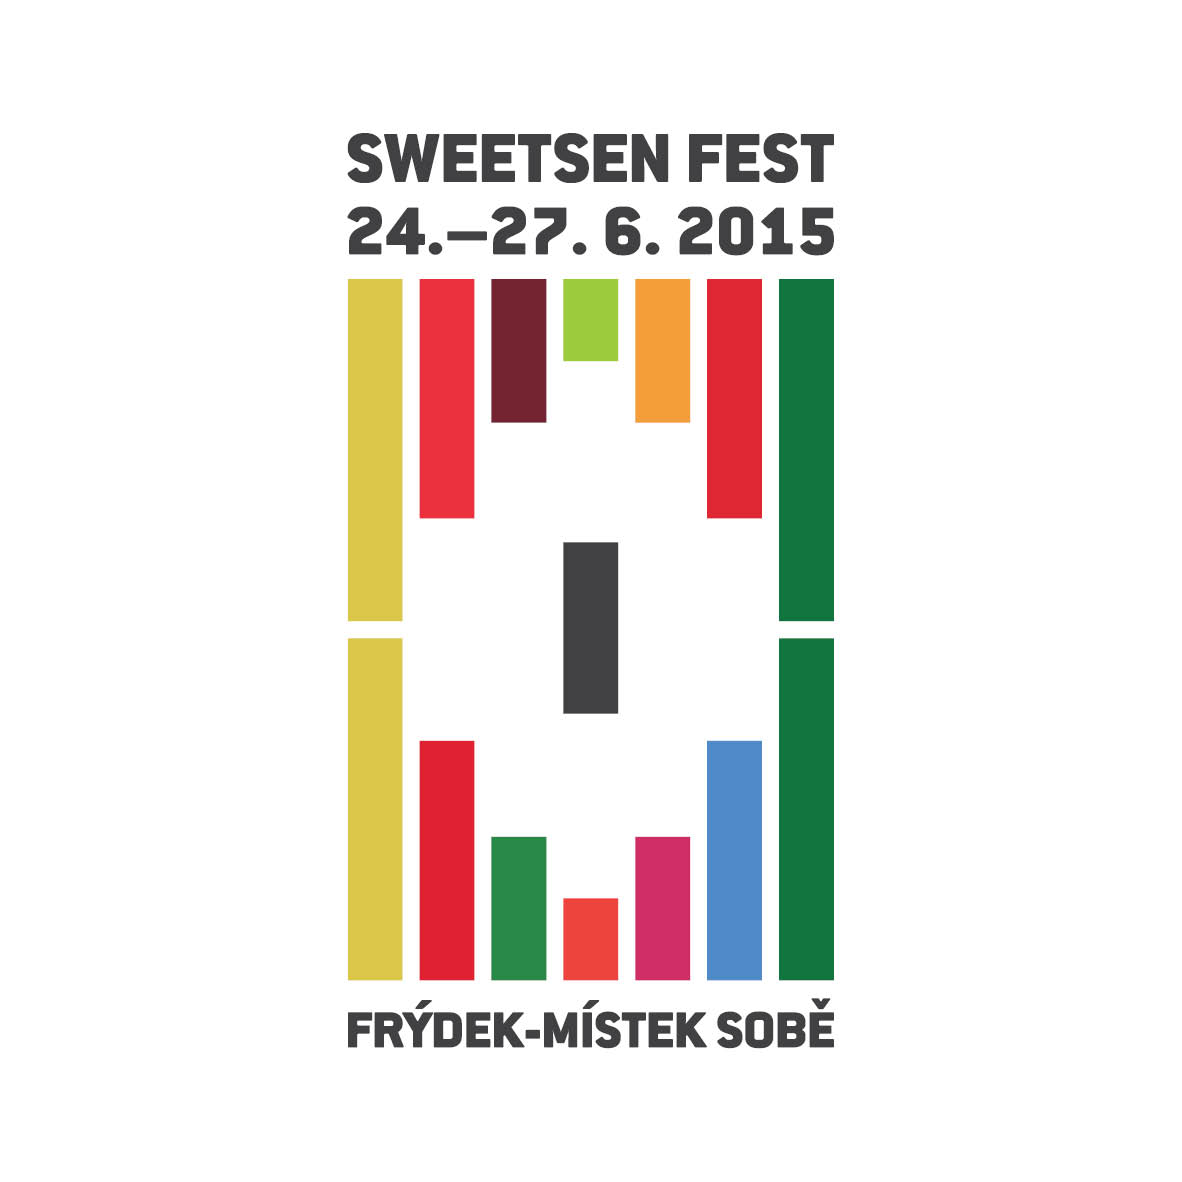 Sweetsen fest 2015